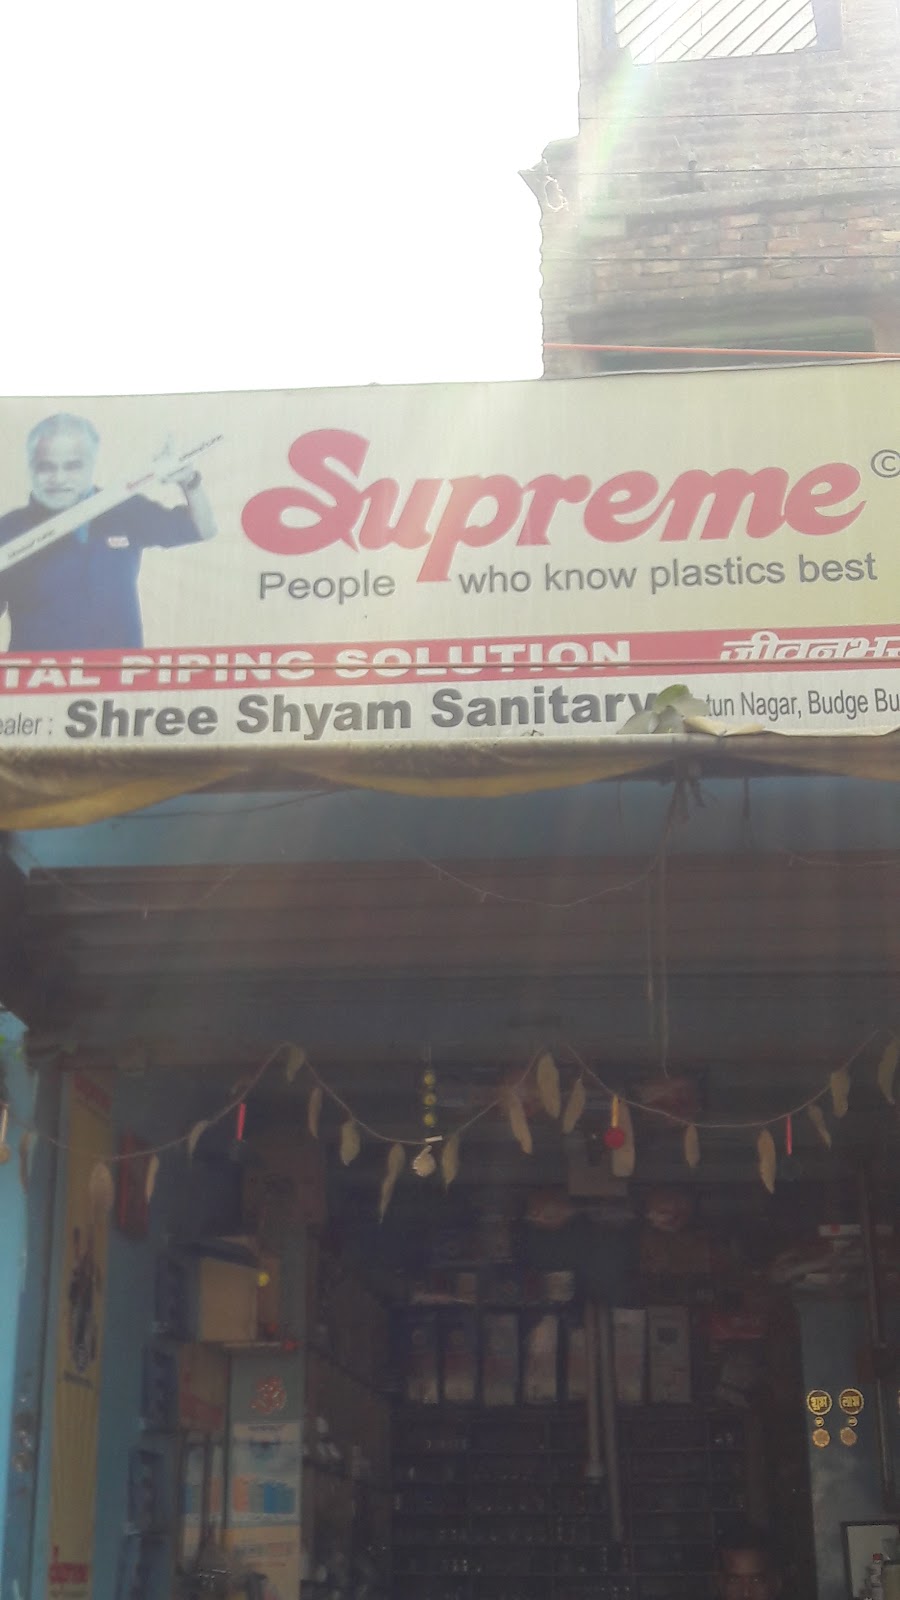 Shree Shyam Sanitary